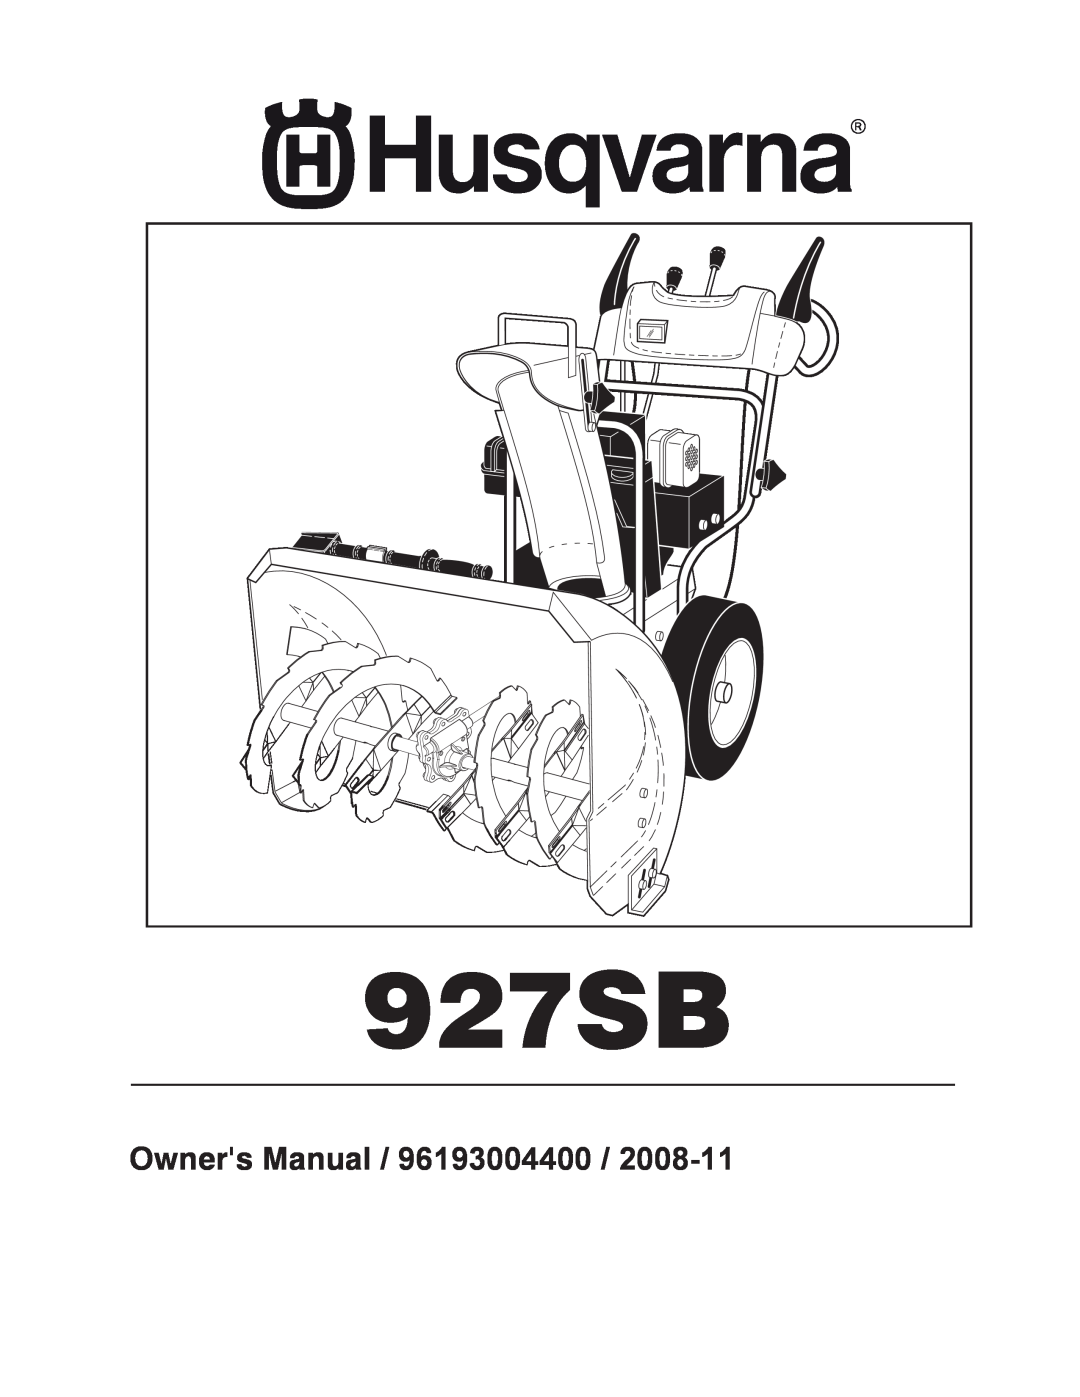 Husqvarna 96193004400 owner manual 927SB 